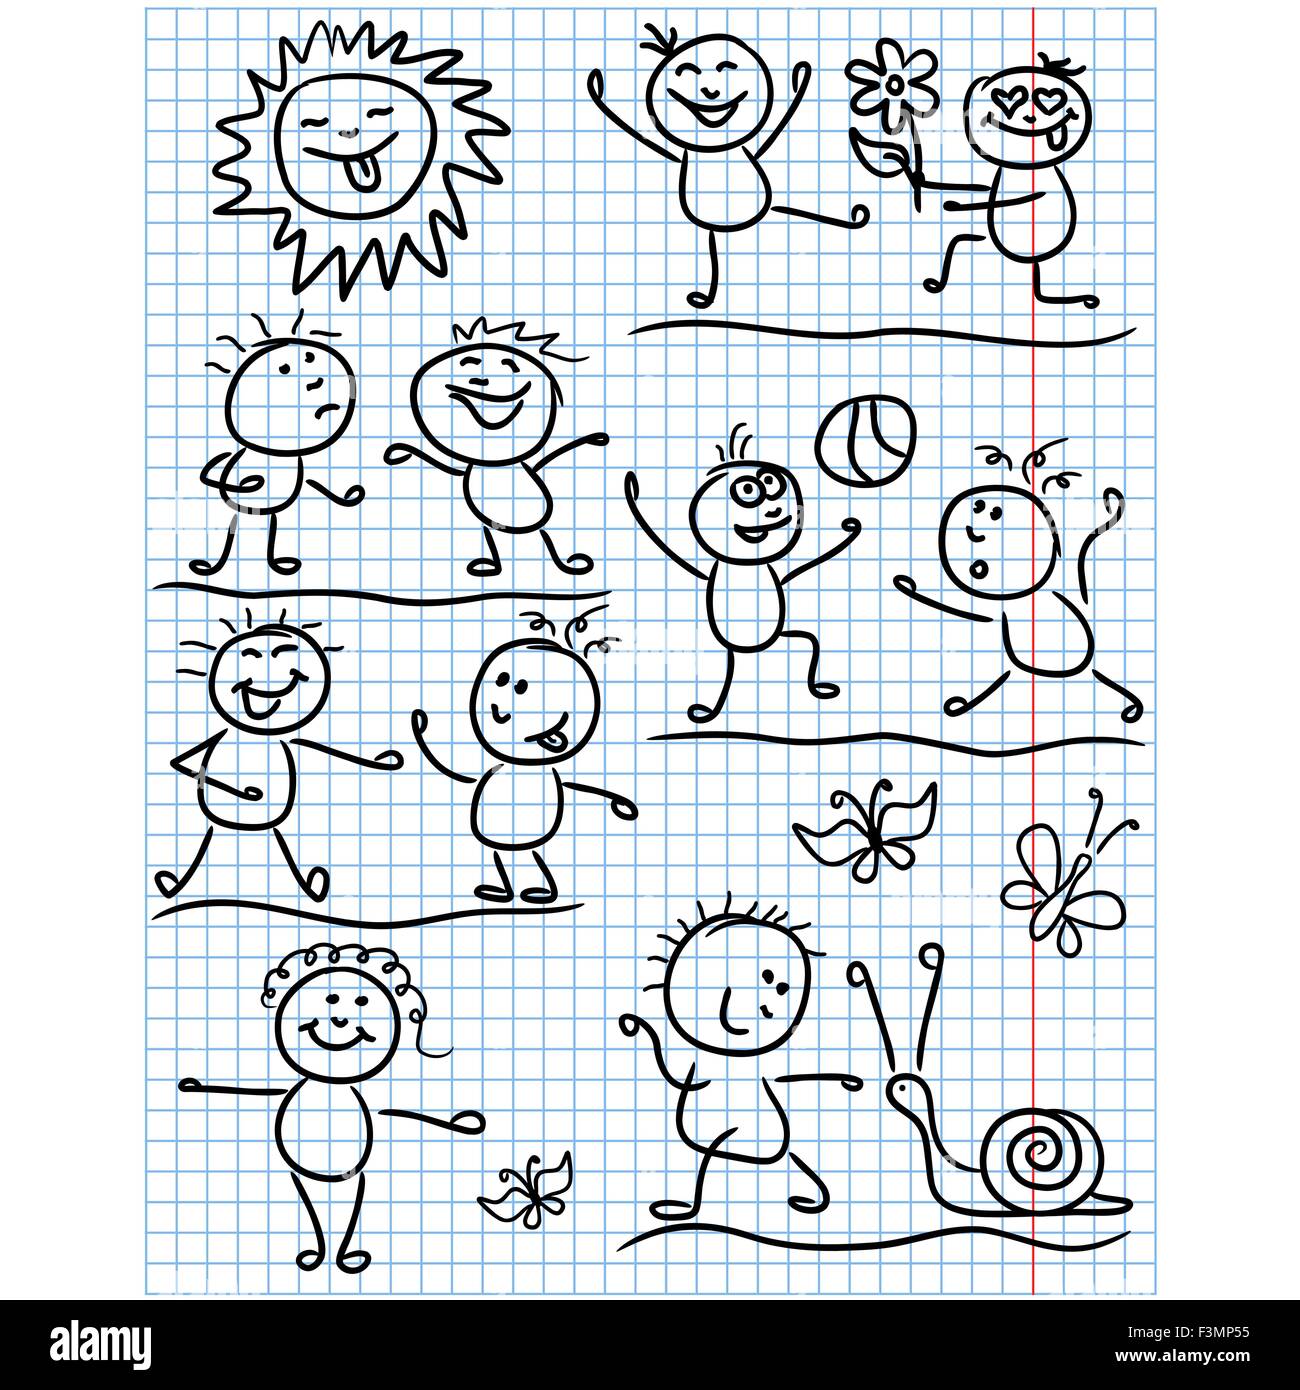 Soleil et sourire amusant jeu de plusieurs chiffres pour enfants dans diverses scènes drôles, images vectorielles cartoon dessin enfantin comme drawi Illustration de Vecteur